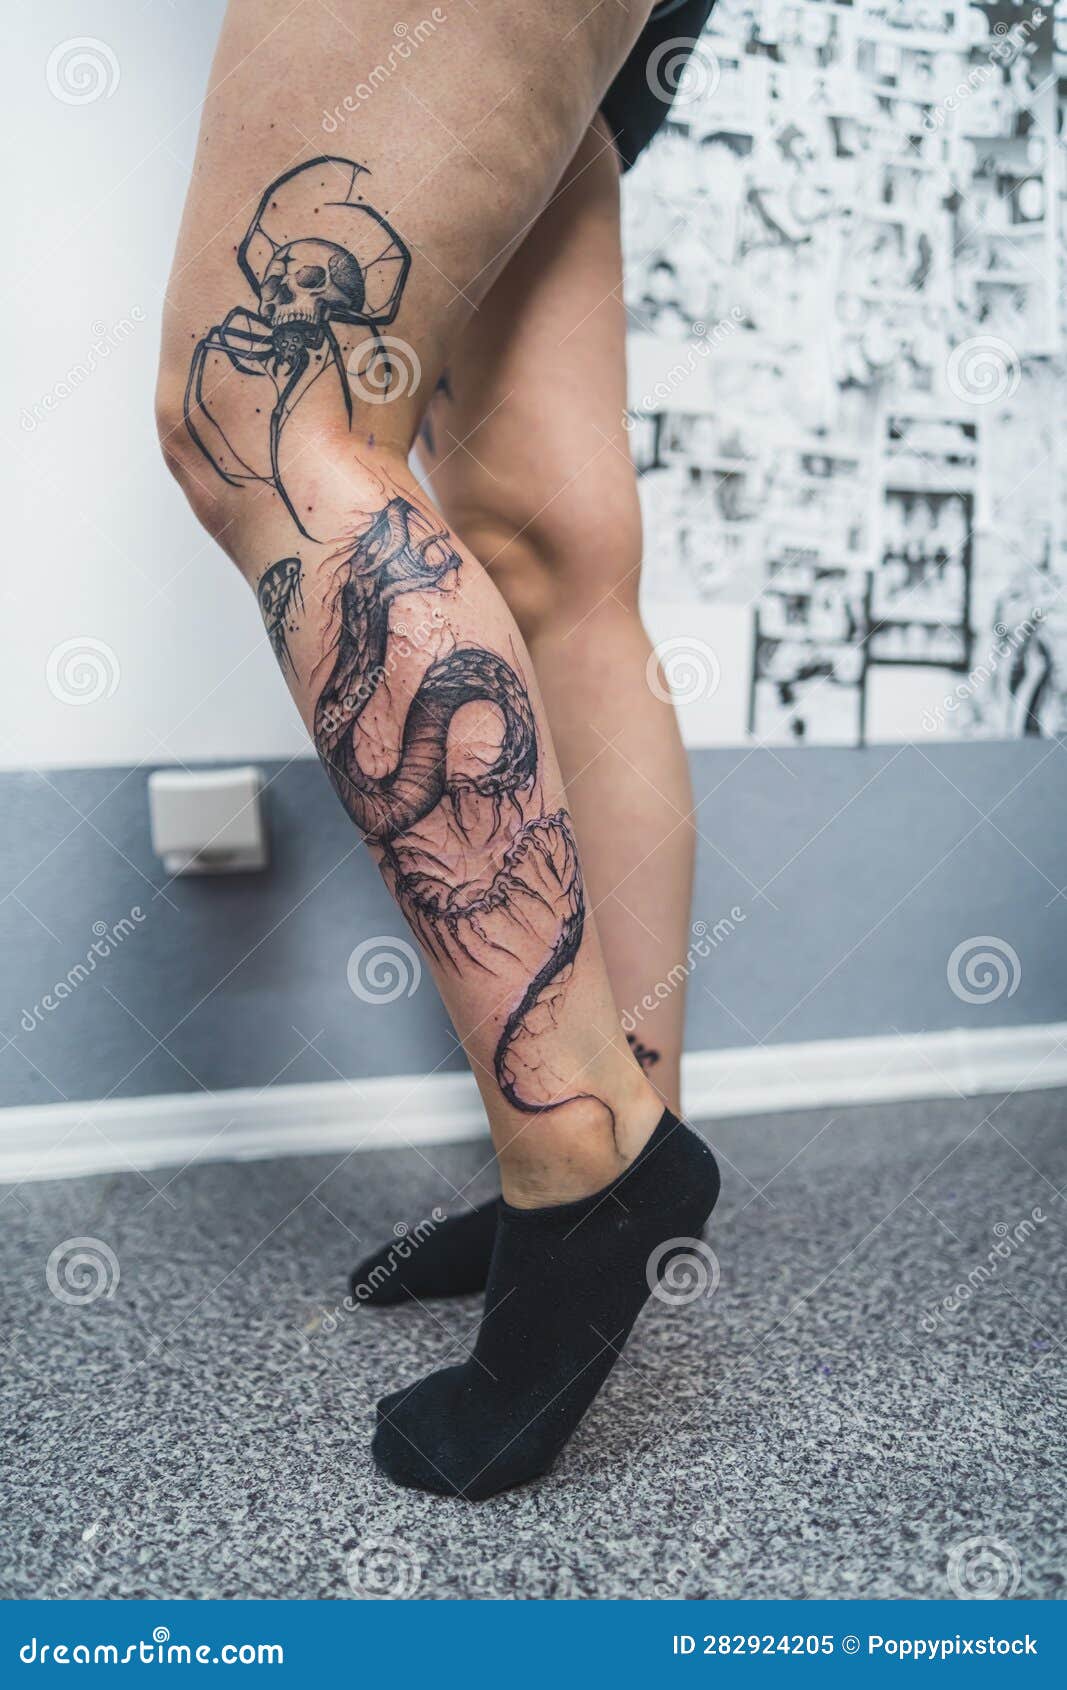 Tattoo, tat, ink, snake, snake tattoo, leg, leg tattoo, flowers, flower  tattoo, blackandgreytattoo, realism, realism tattoo, 3d tattoo, b&g tattoo,  portrait tattoo, portrait, tattooart, tattoo life, photography tattoo,  tattoorealistic, realistictattoo ...